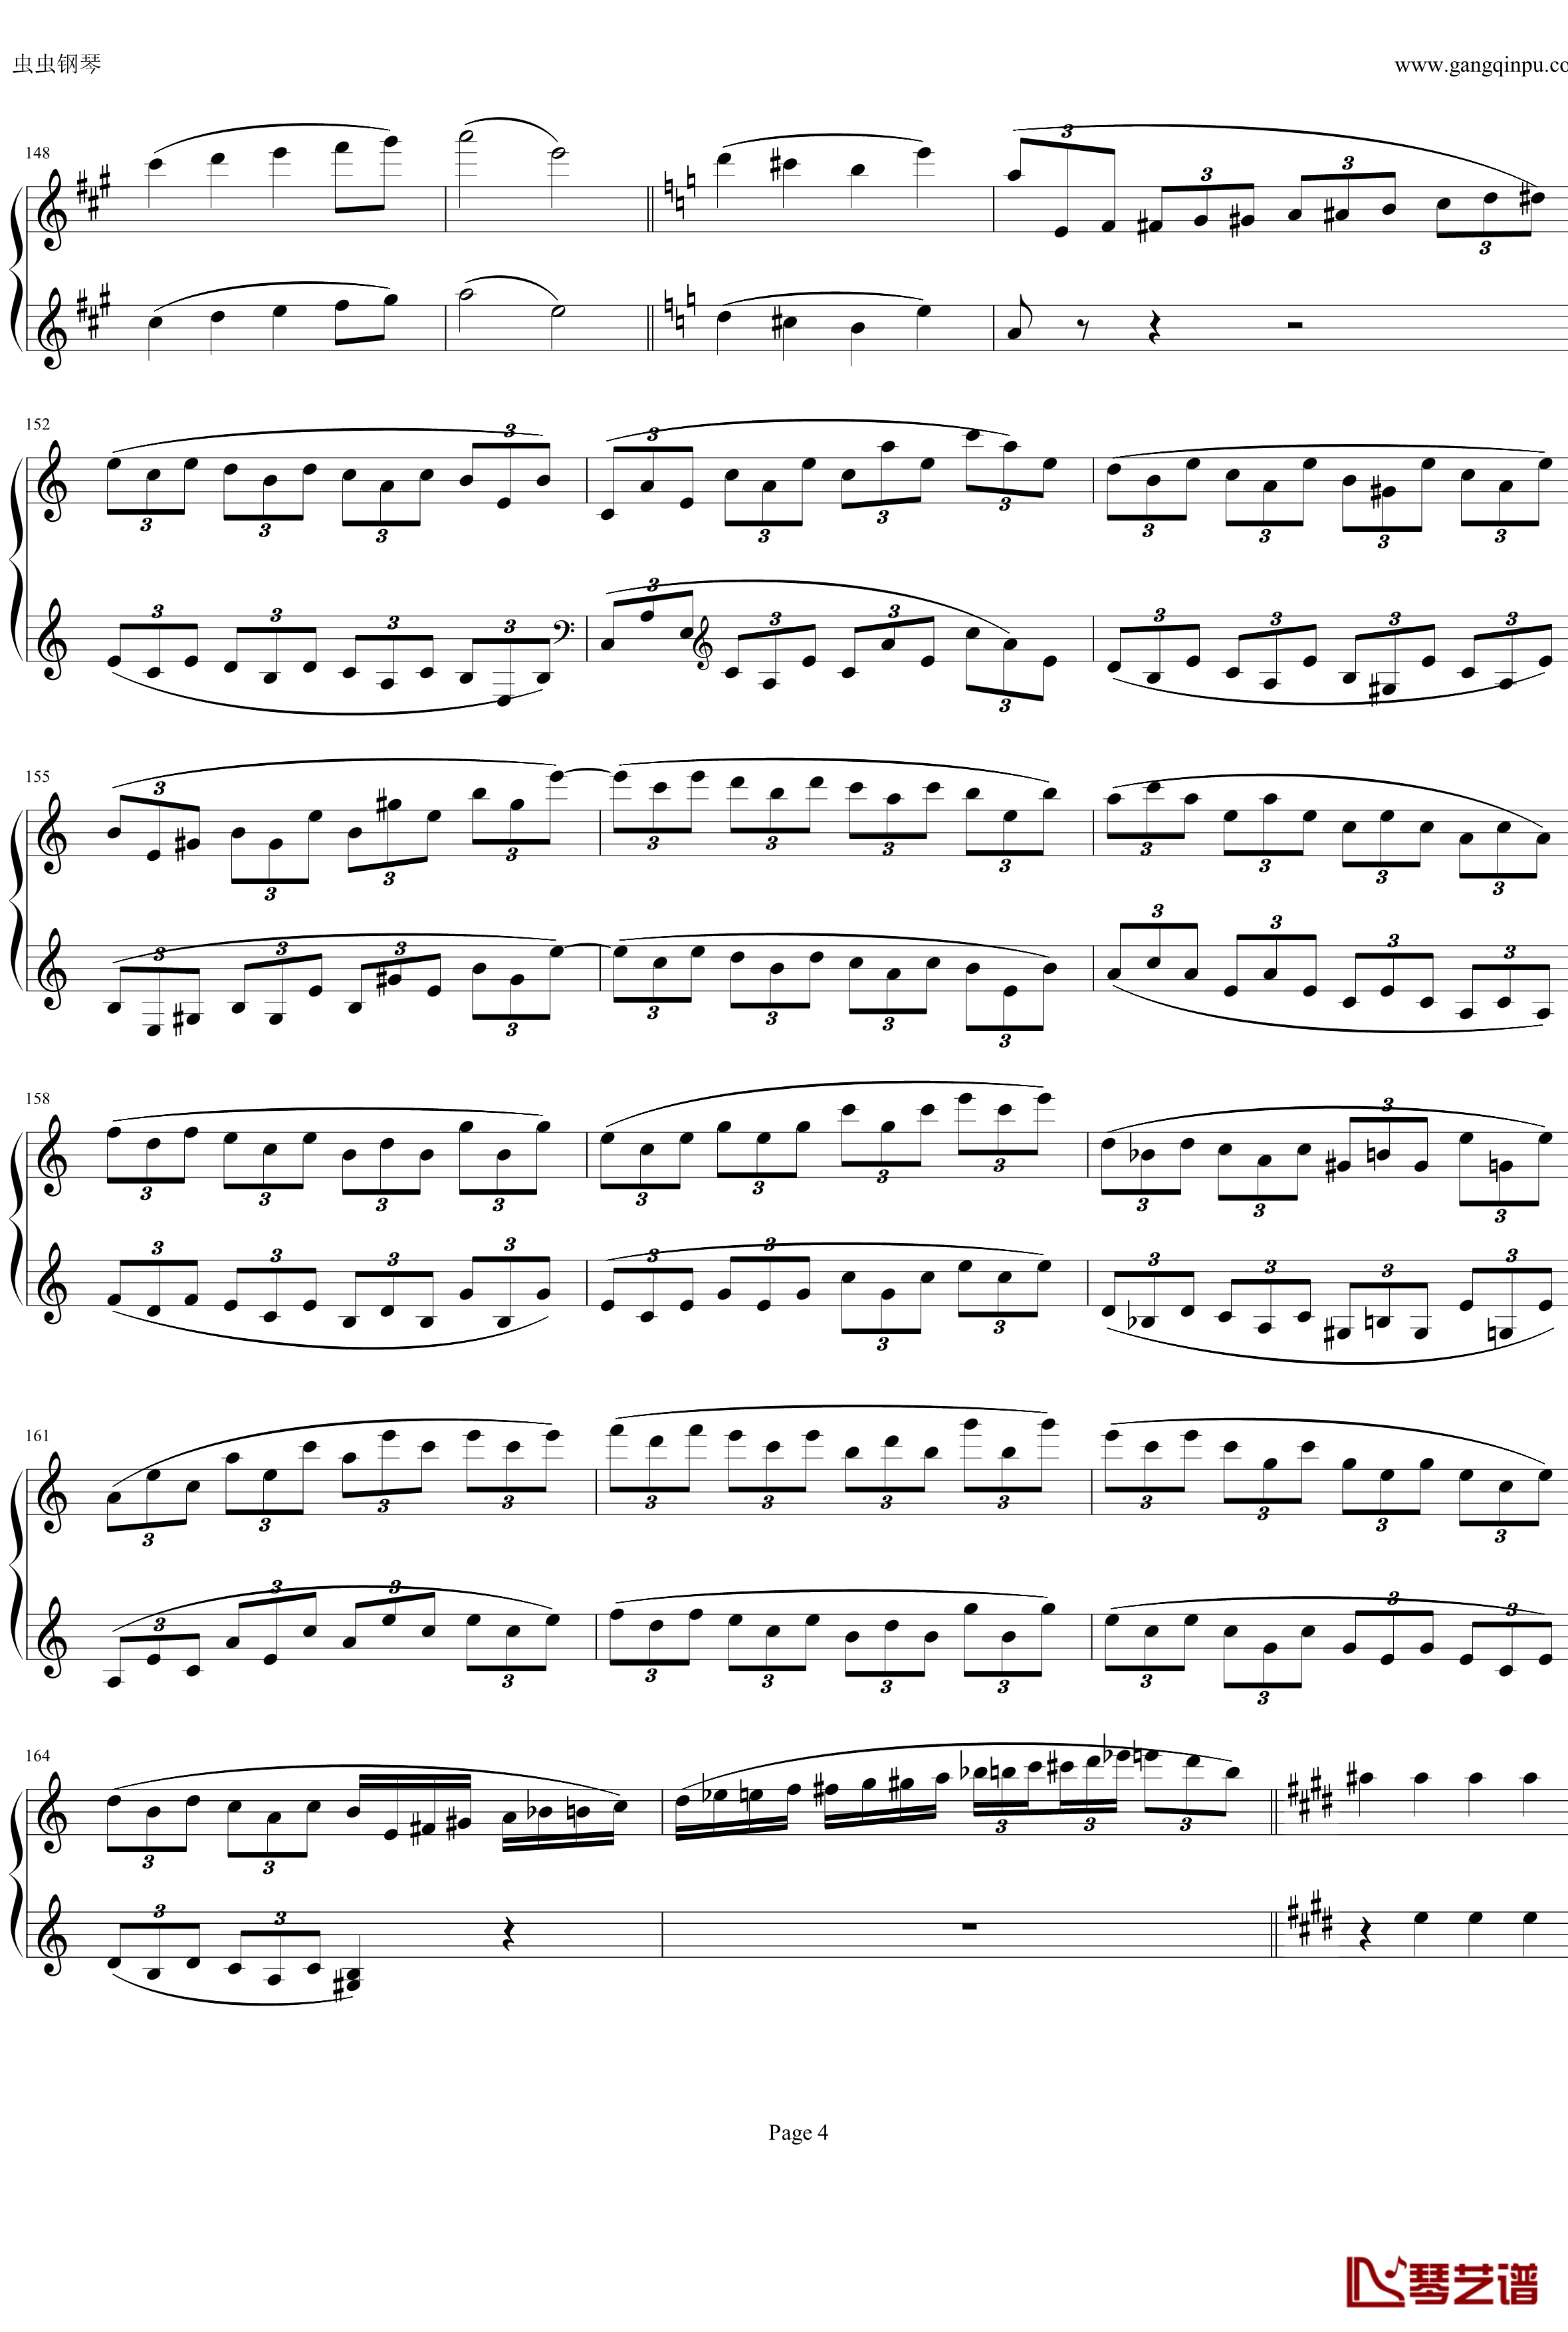 钢琴协奏曲Op61第一乐章钢琴谱-贝多芬-beethoven4